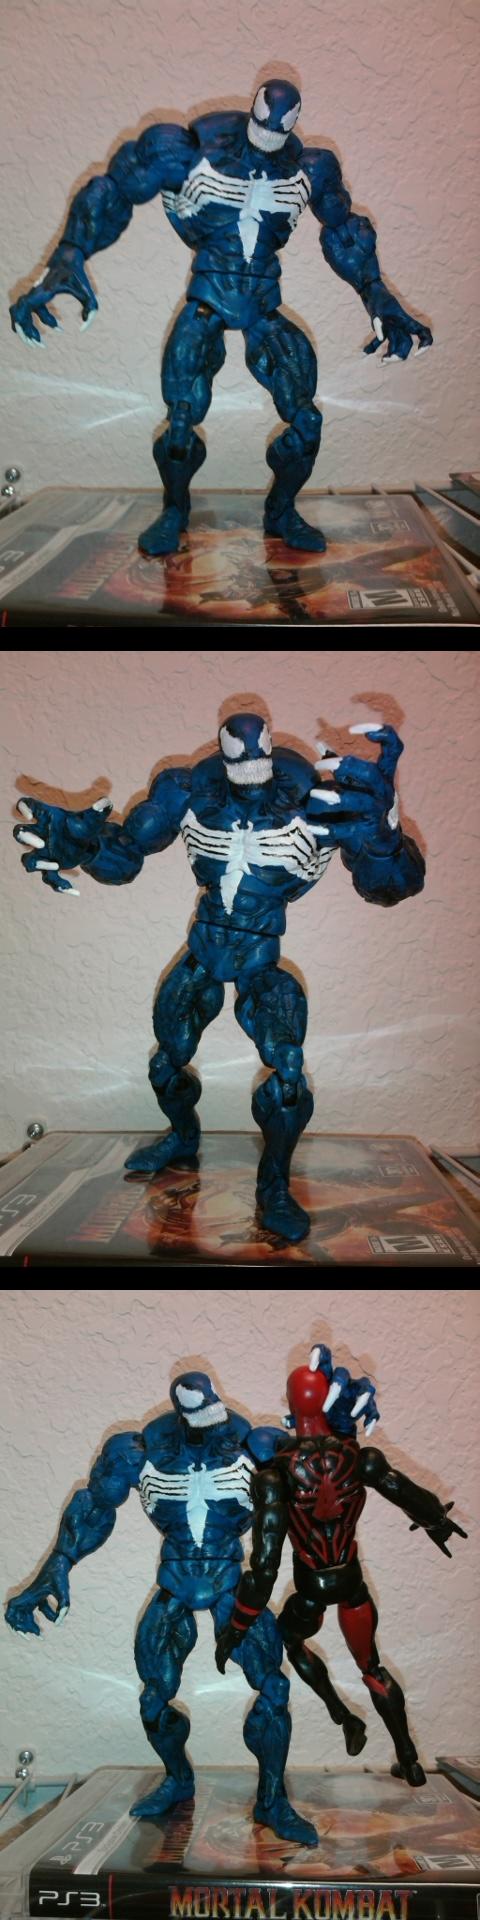 Custom Marvel Venom Figure